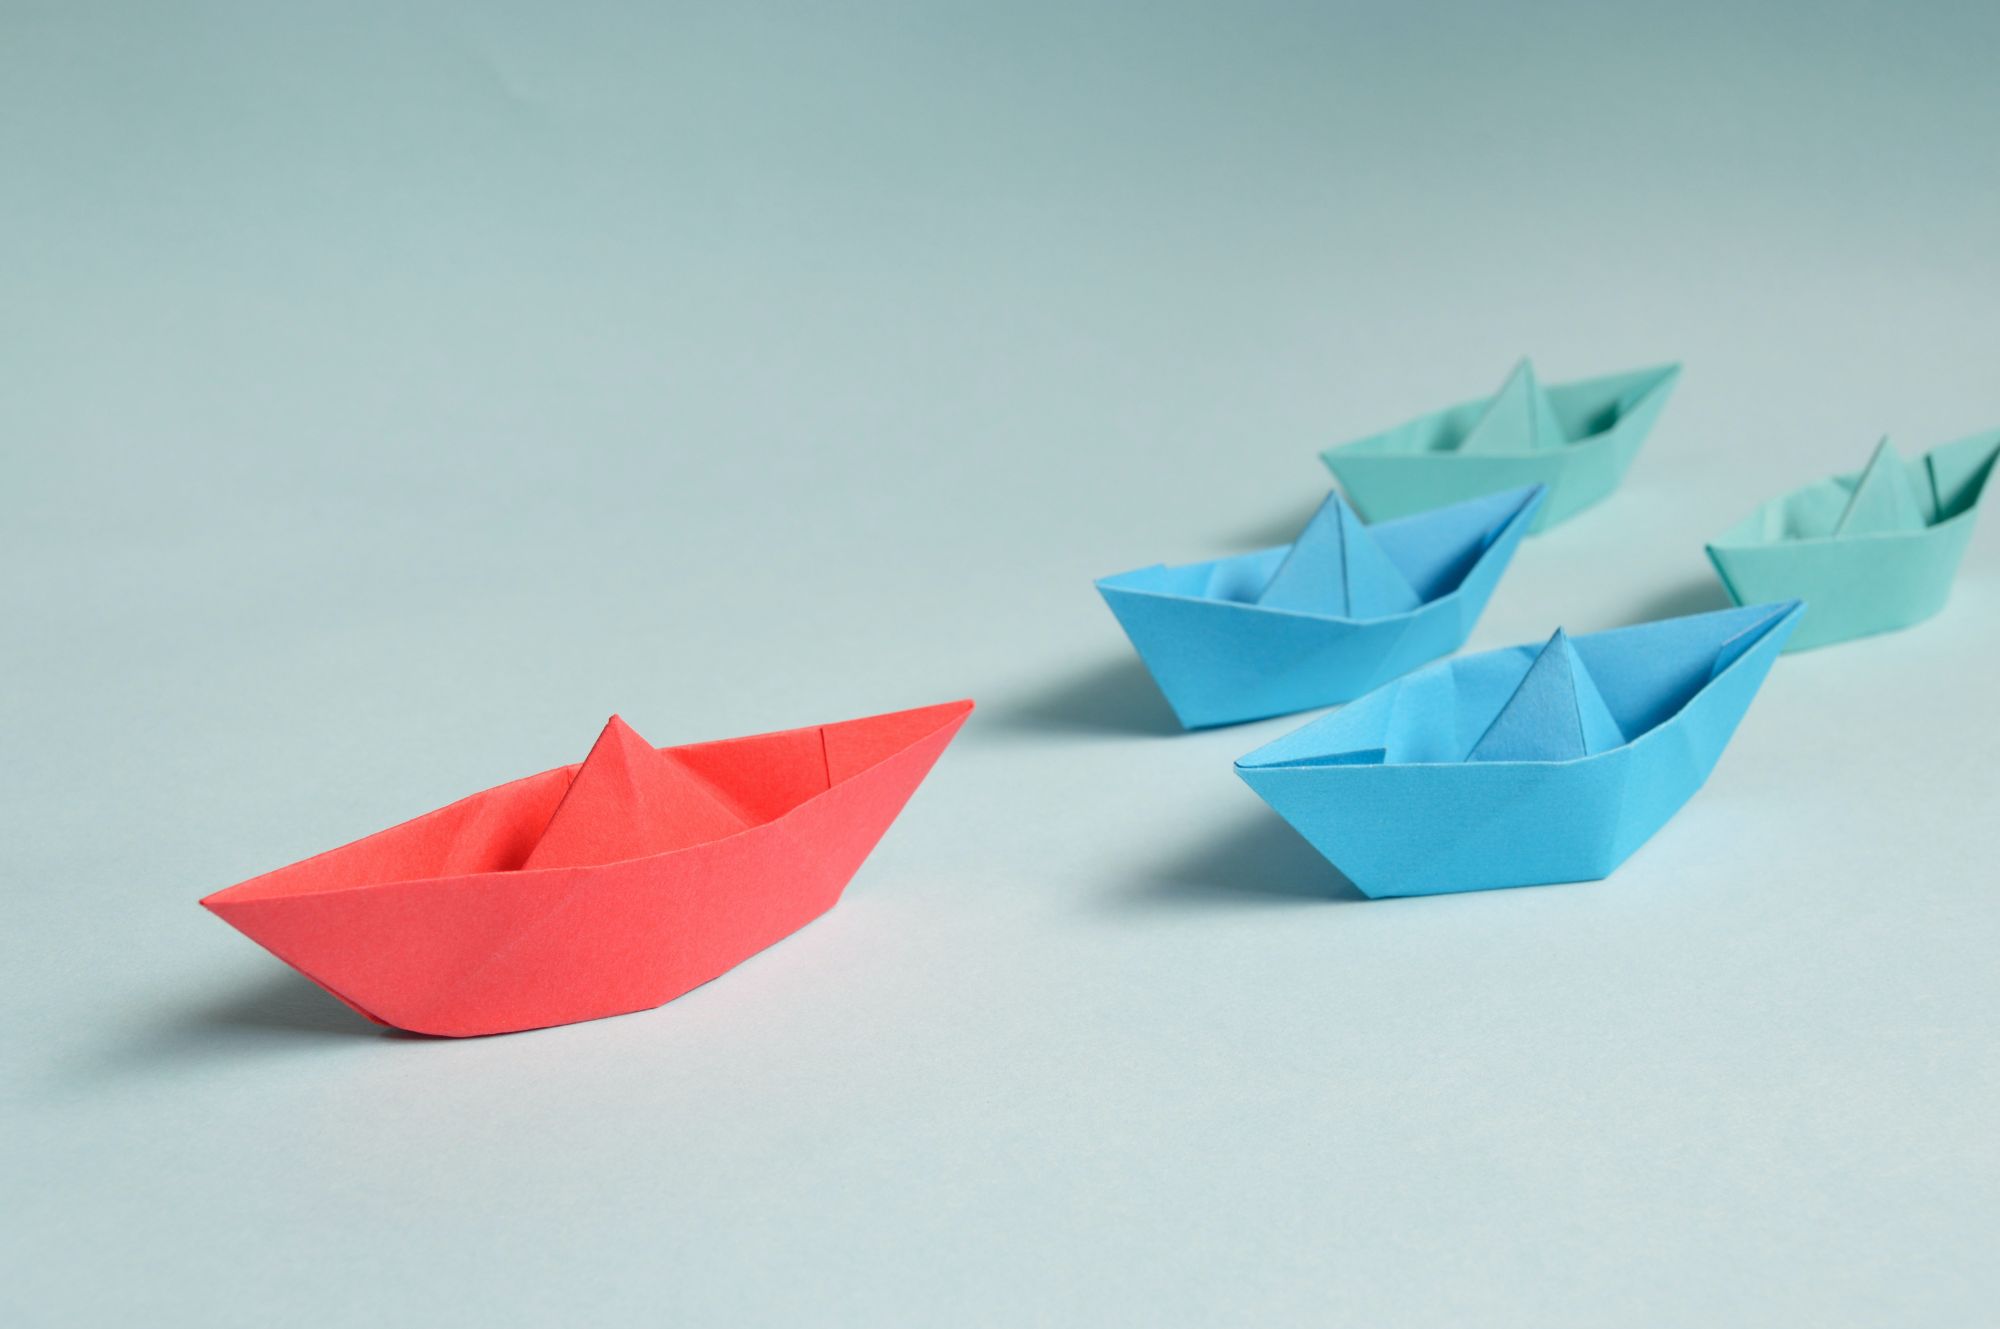 paper boats denoting leadership and teams